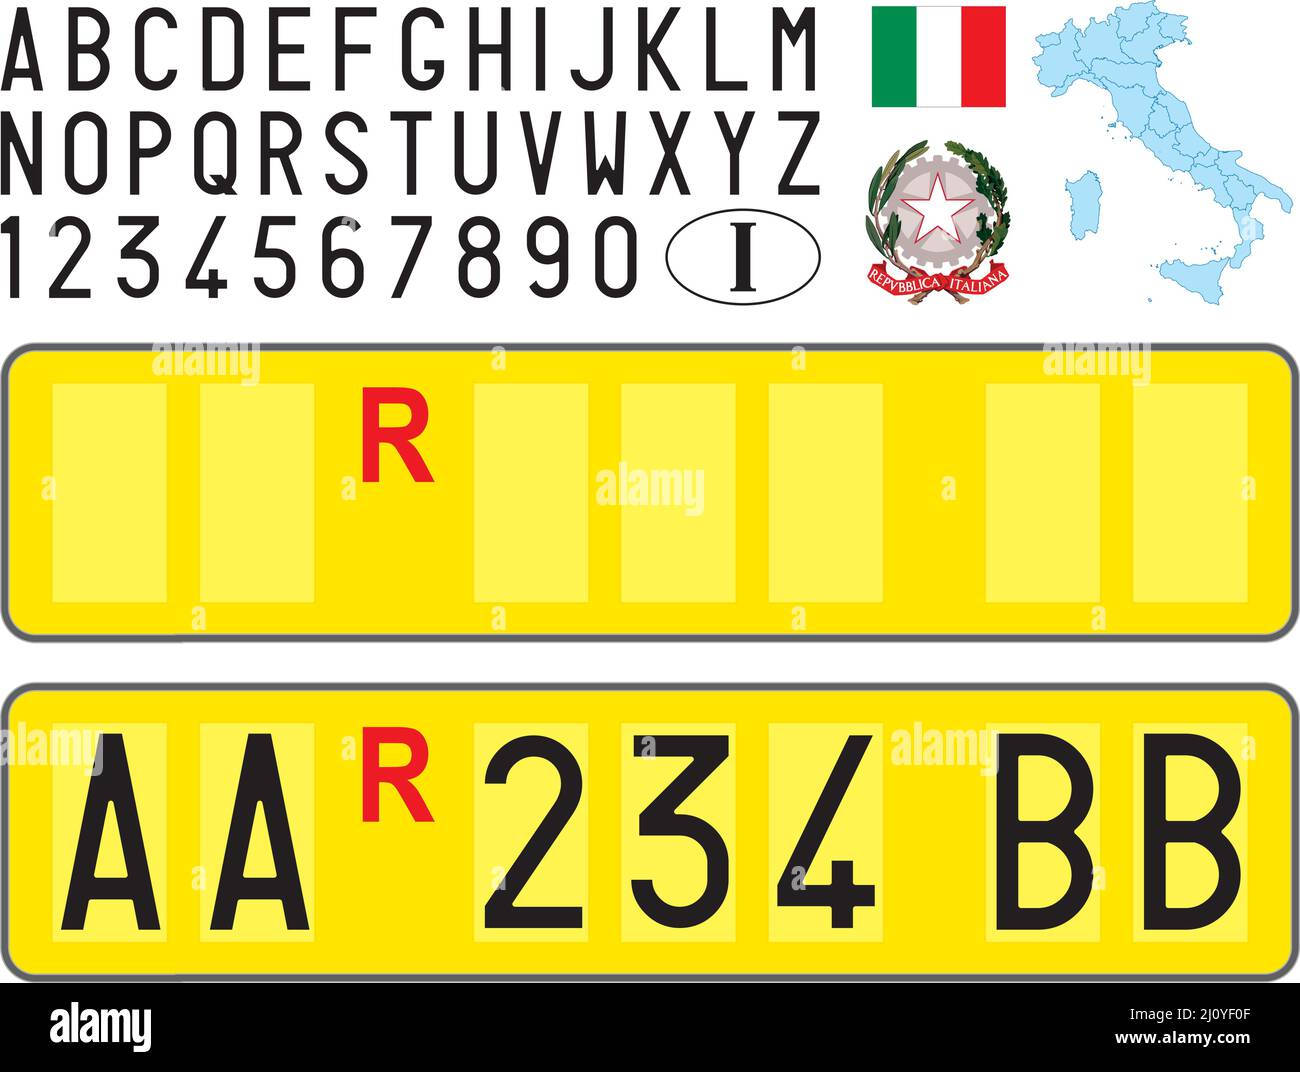 Placa amarilla italiana especial para remolques y camiones articulados para transporte pesado con letras, números y símbolos, Italia, ilustración vectorial Ilustración del Vector